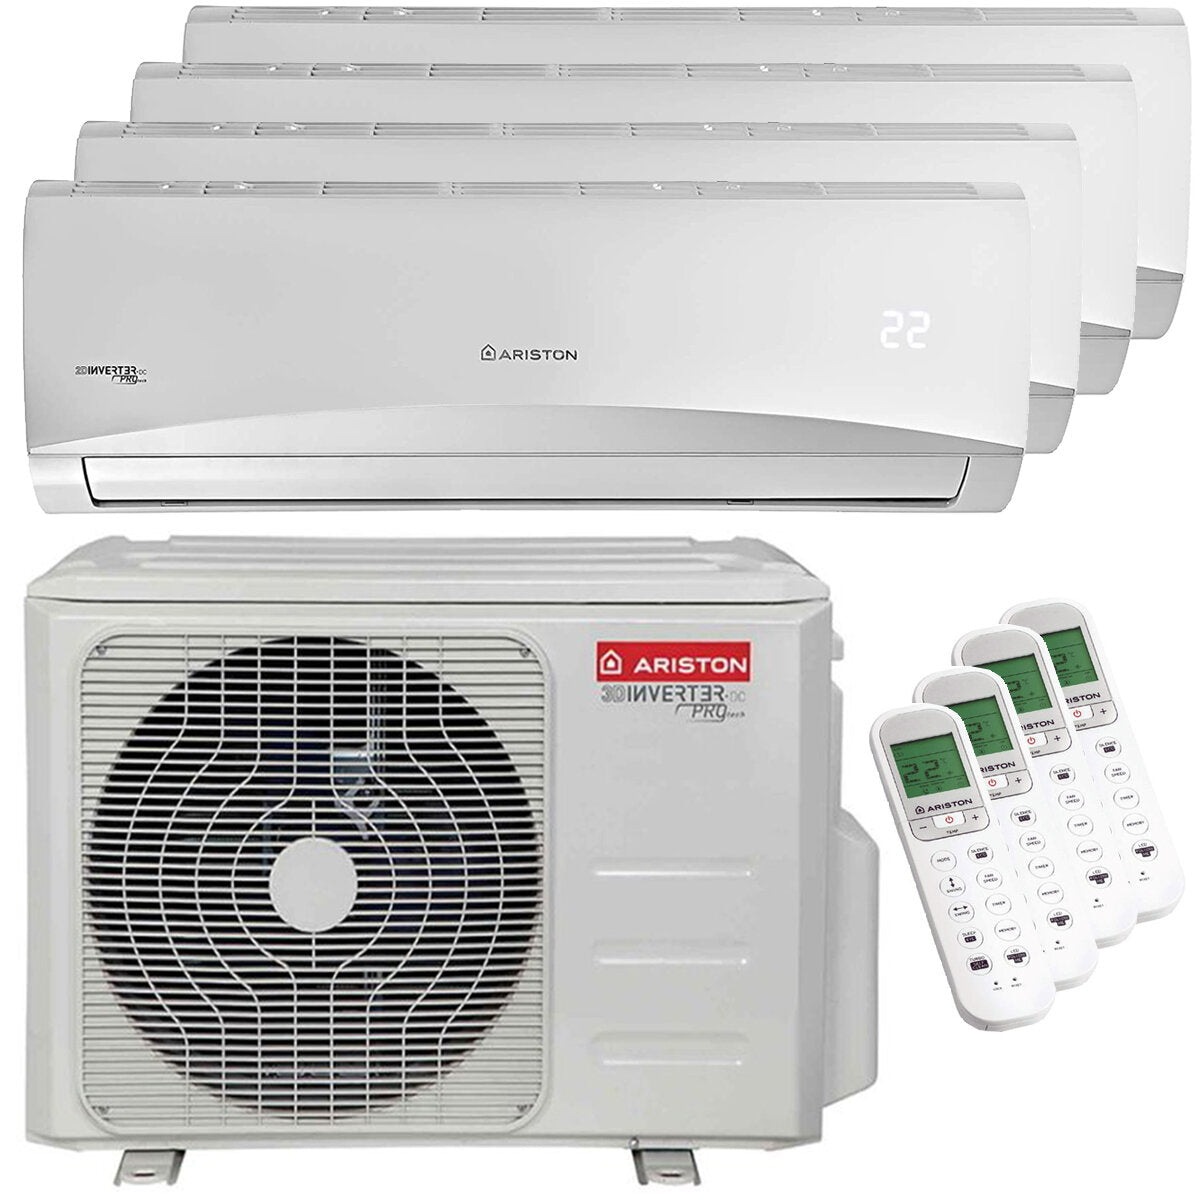 Ariston PRIOS R32 quadri split air conditioner 12000 + 12000 + 12000 + 12000 BTU inverter A ++ outdoor unit 10.6 kW